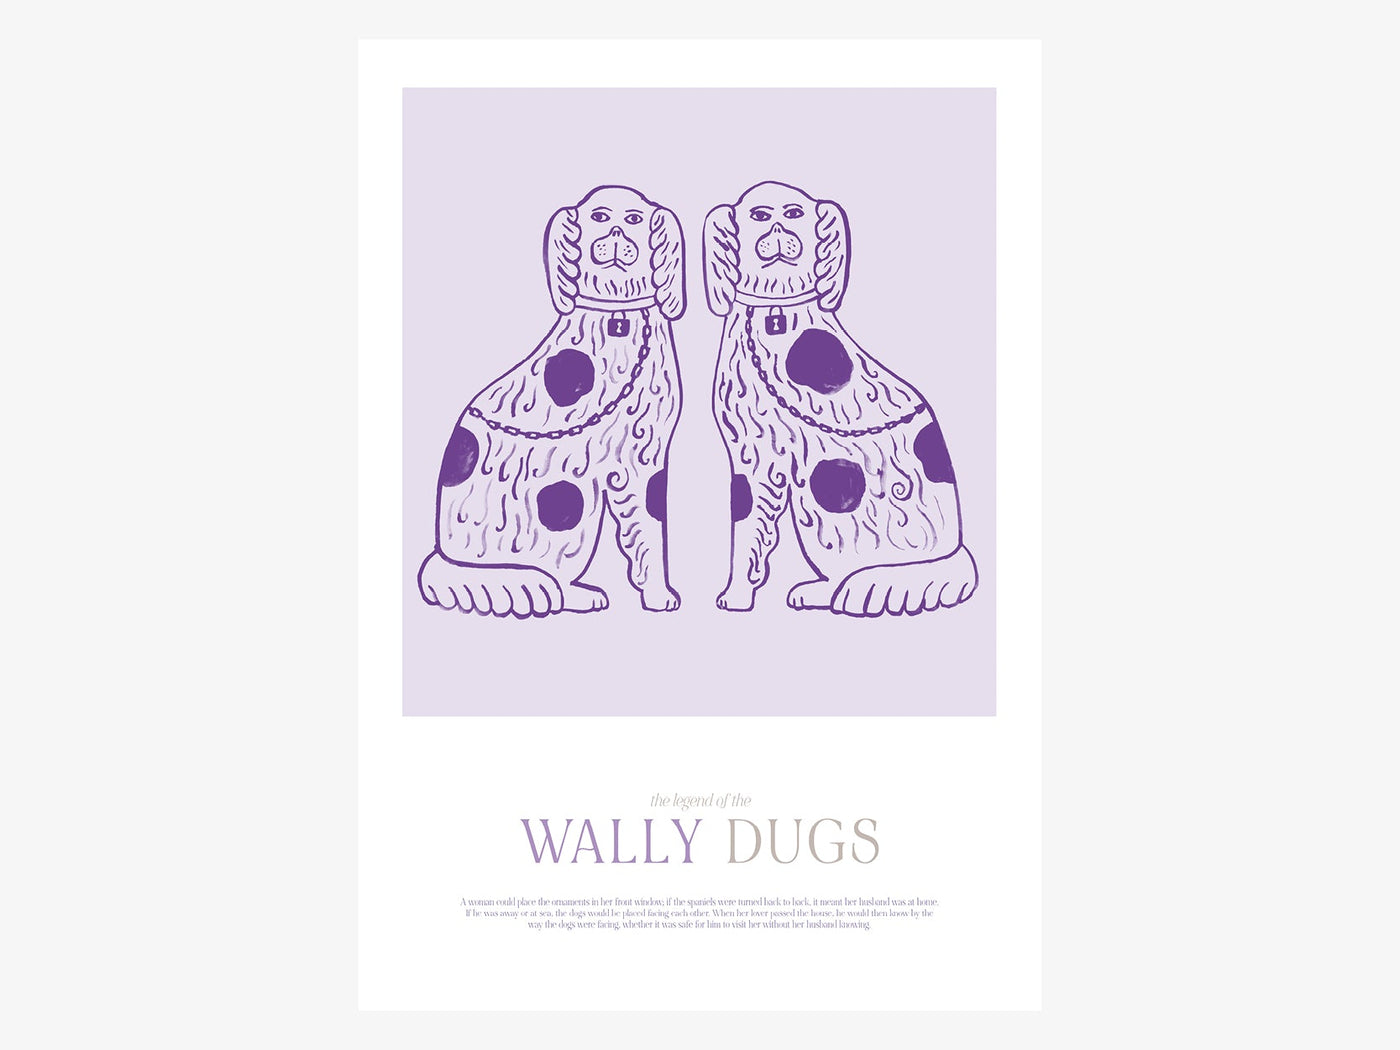 Print / Wally Dugs